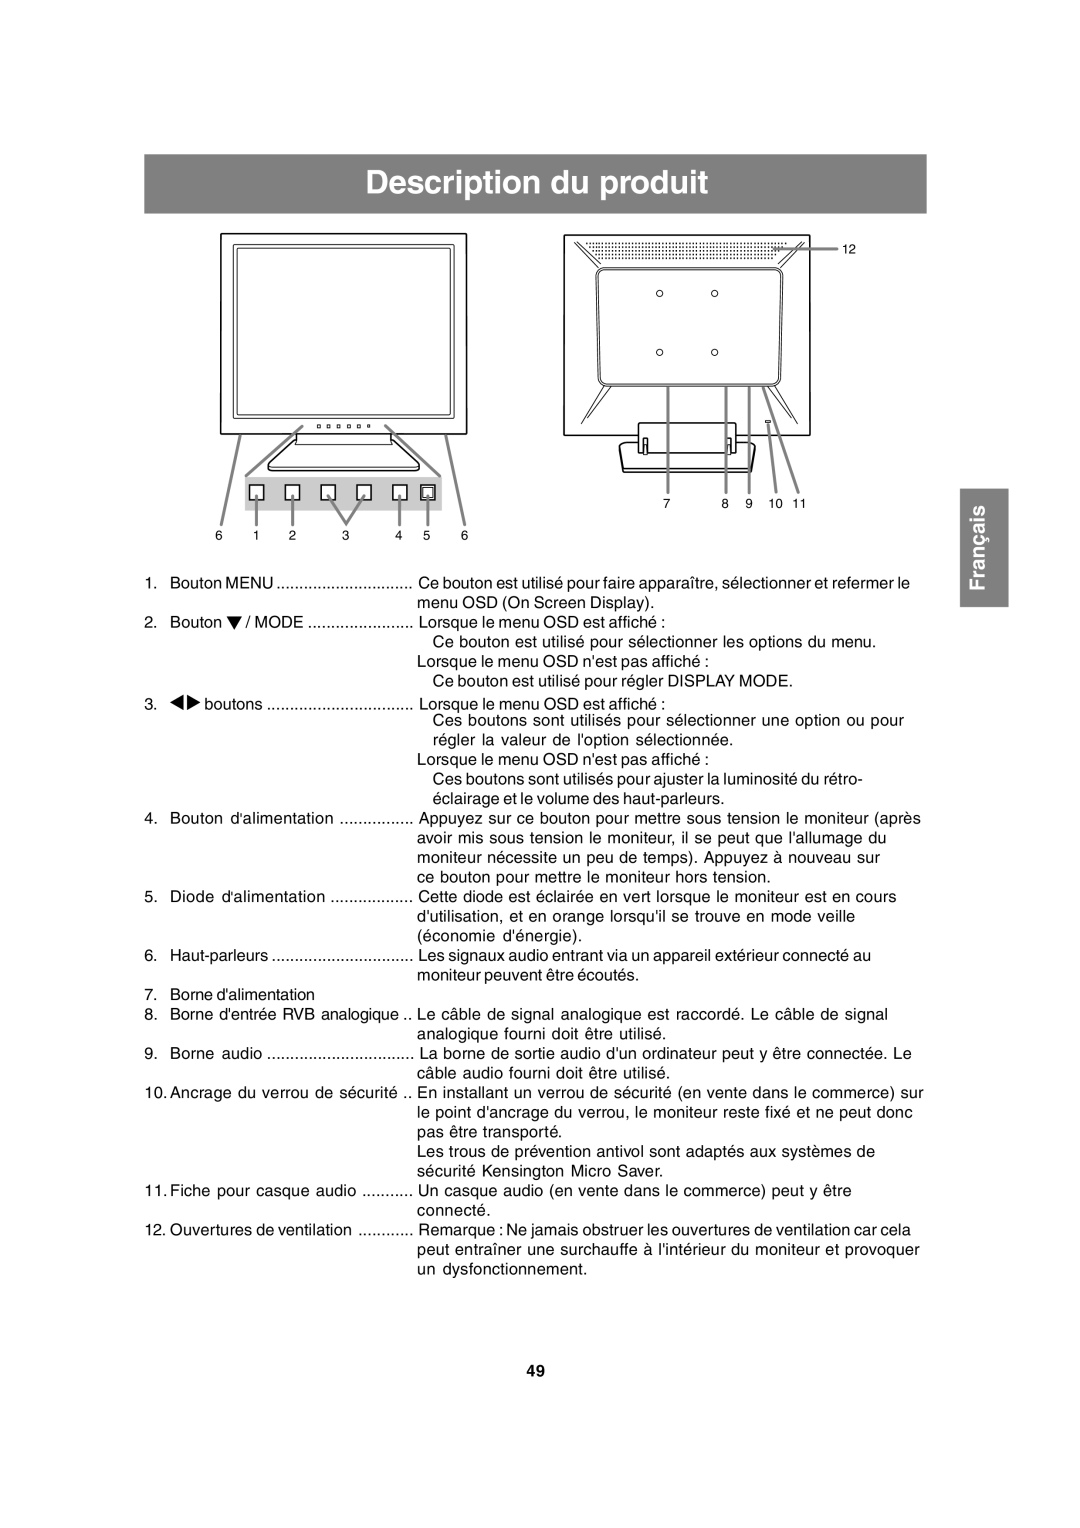 Sharp LL-T15A4 operation manual Description du produit, Français, Bouton MENU, Haut-parleurs, Borne audio 